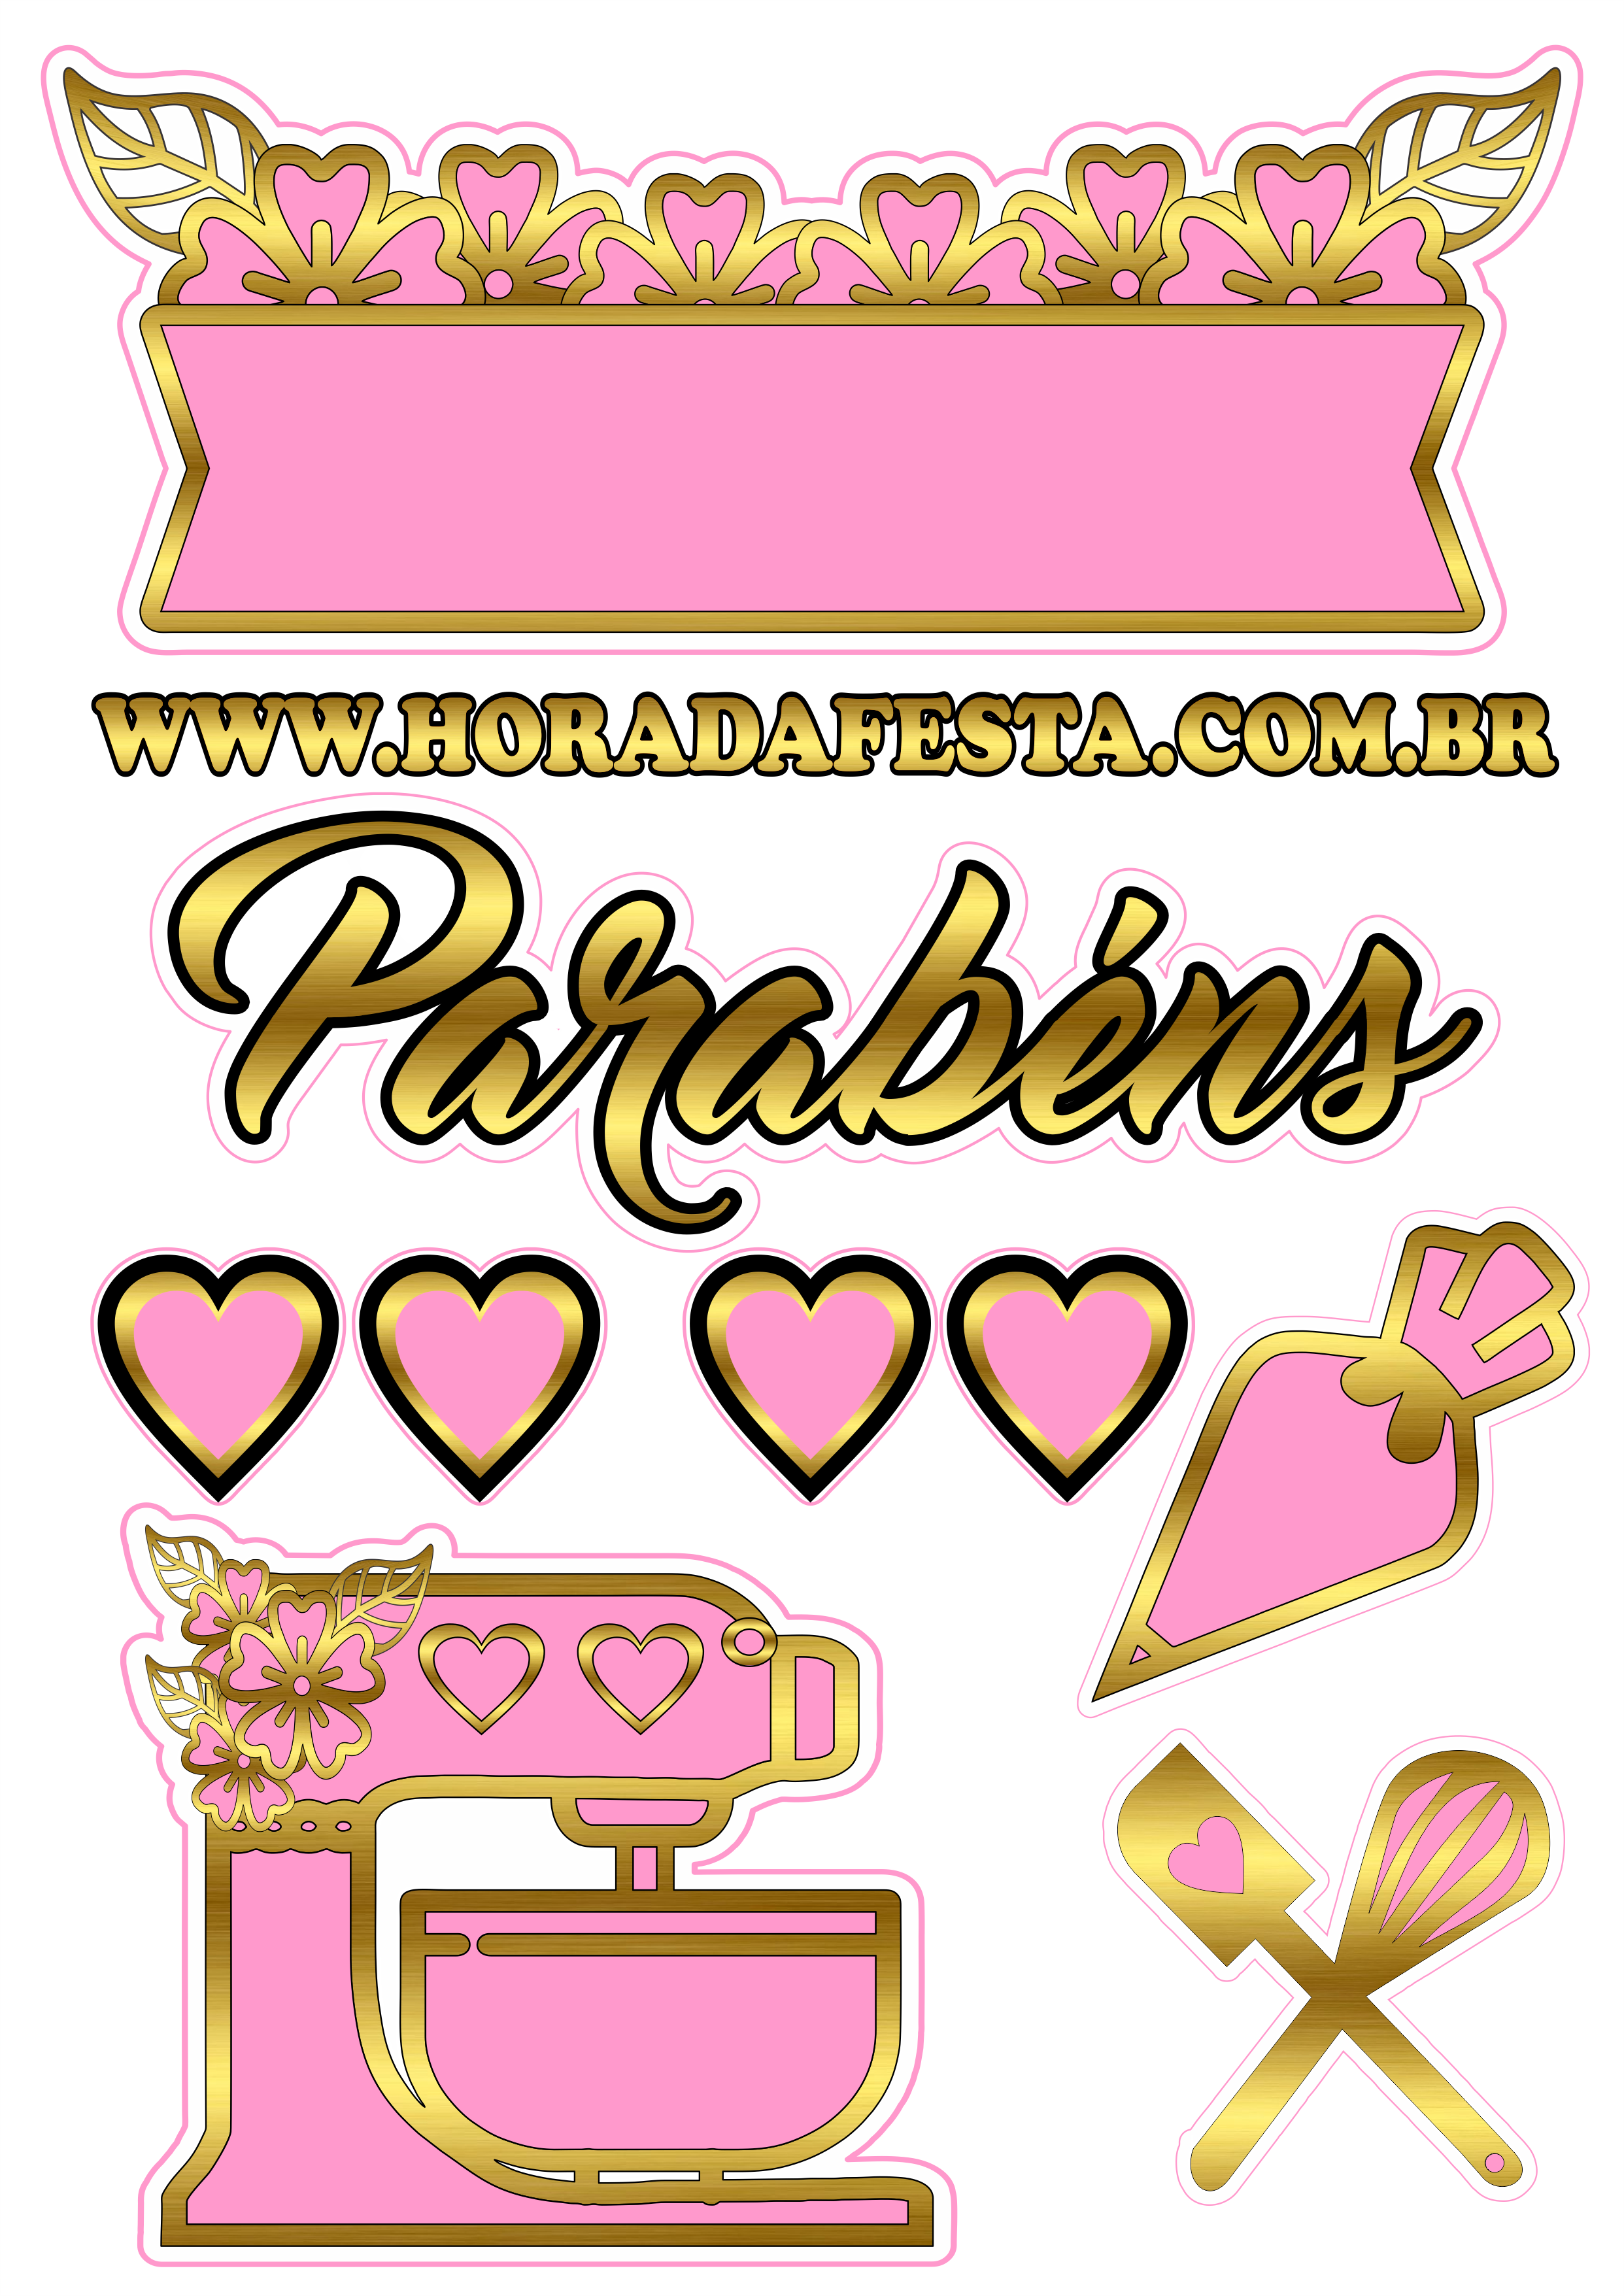 Topo de bolo tema confeiteira rosa com dourado pronto para imprimir parabéns corações png